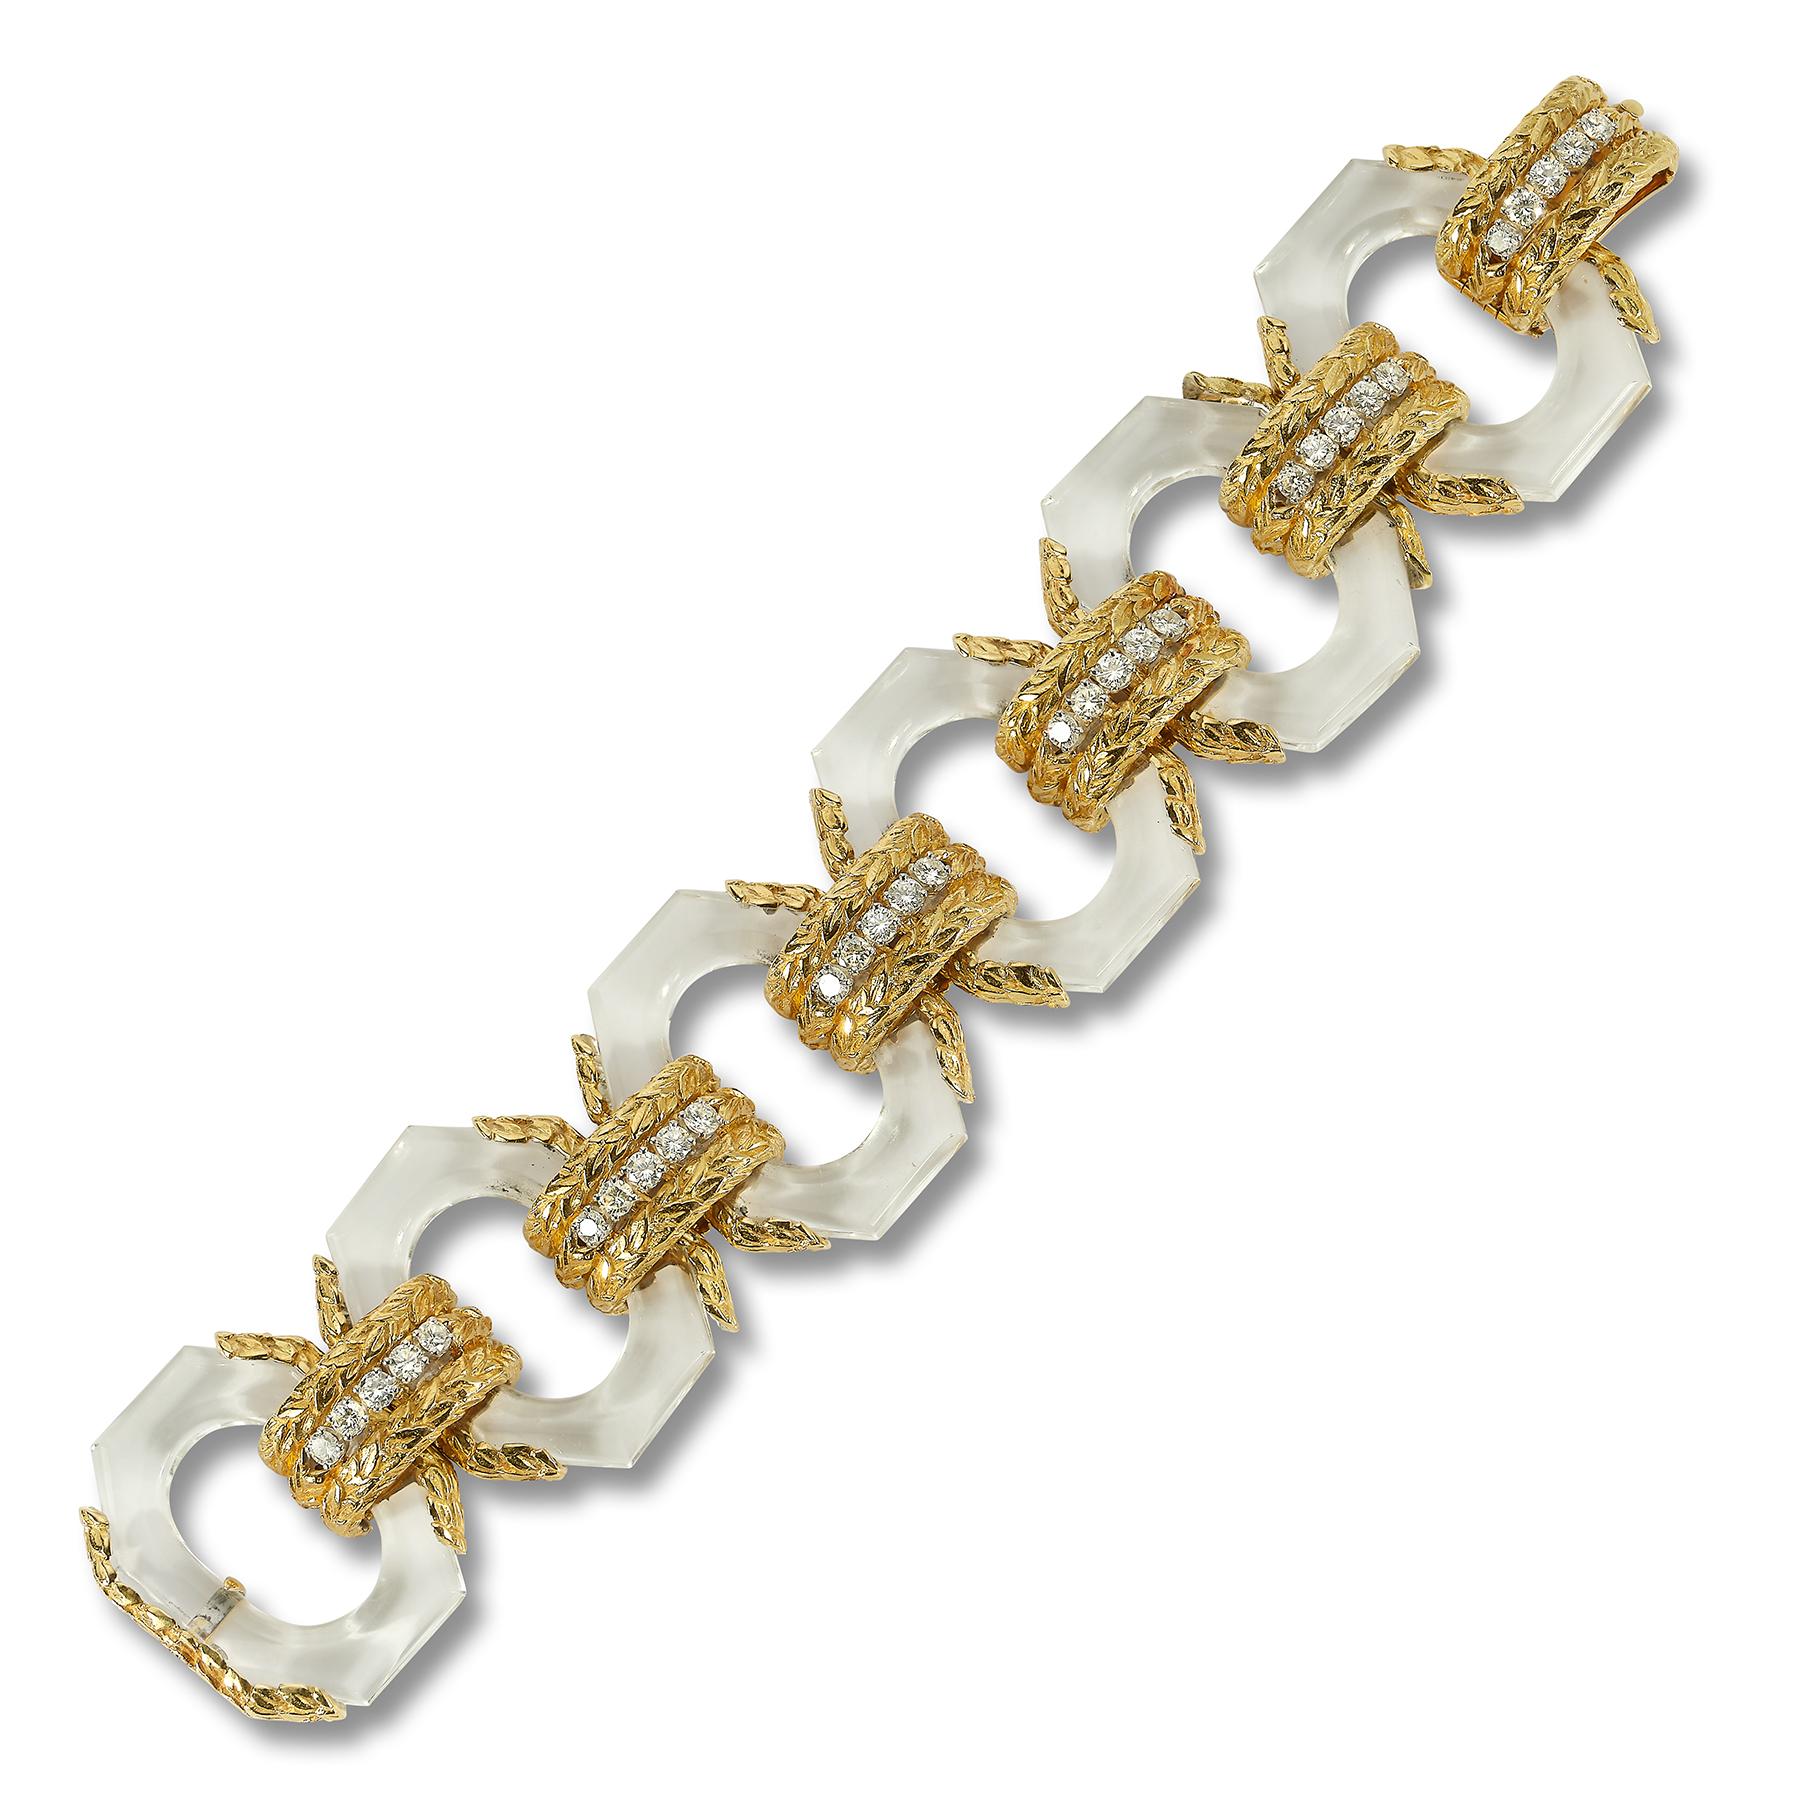 David Webb Bergkristall- und Diamant-Armband

6 Glieder aus Bergkristall, besetzt mit Diamanten und Gold.

Abmessungen: 7.5